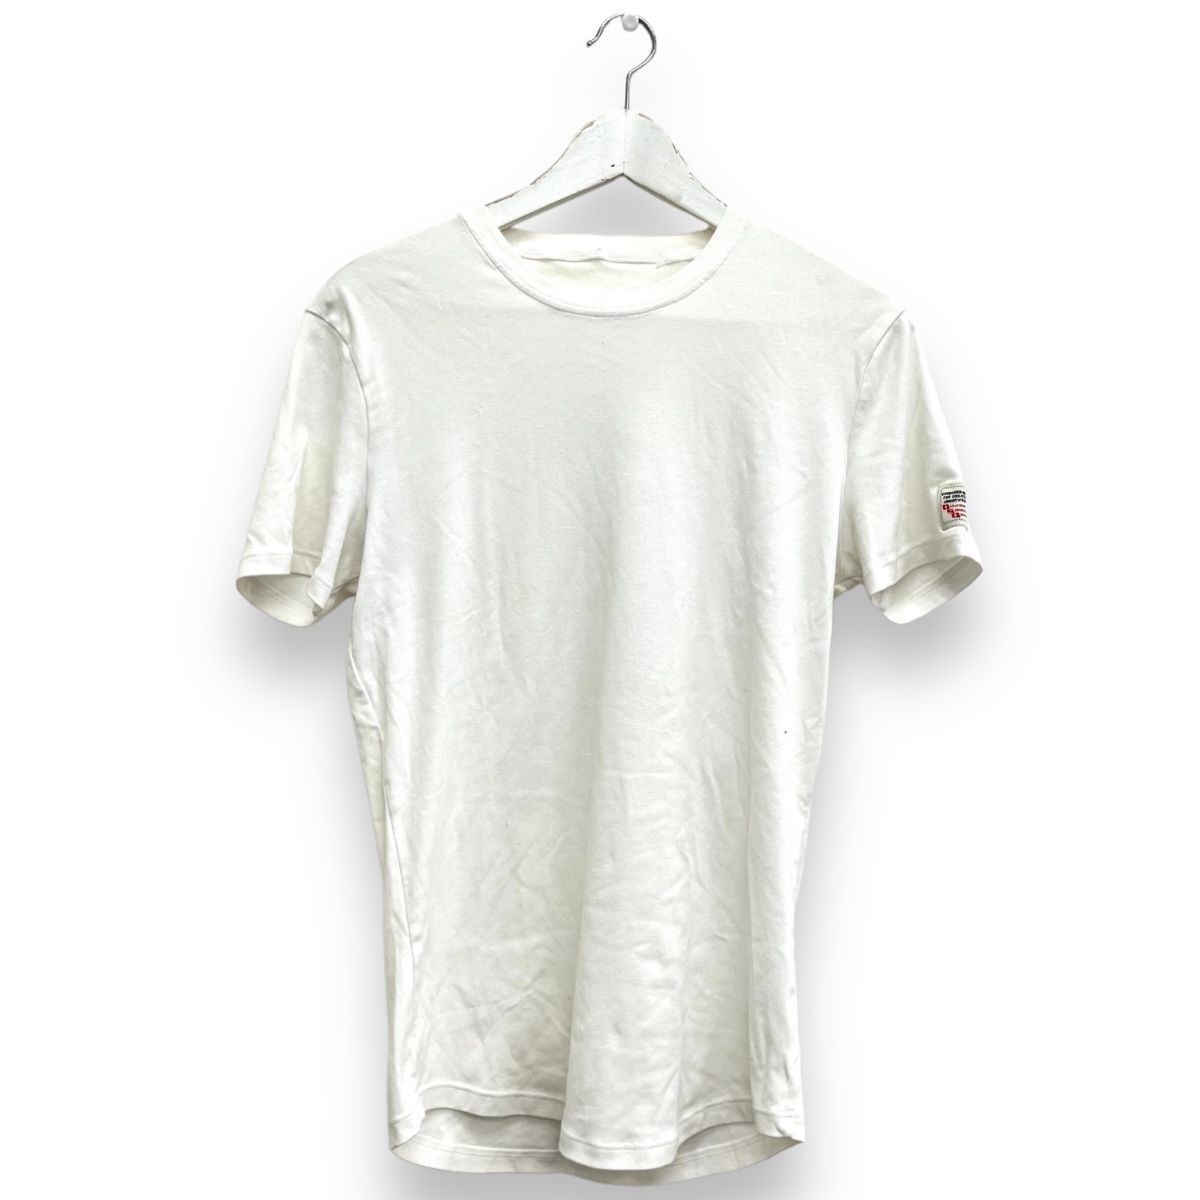 DSQUARED2 ディースクエアード 服 Tシャツ ワンポイント ファッション トップス アパレル XXLサイズ ホワイト 半袖の画像1